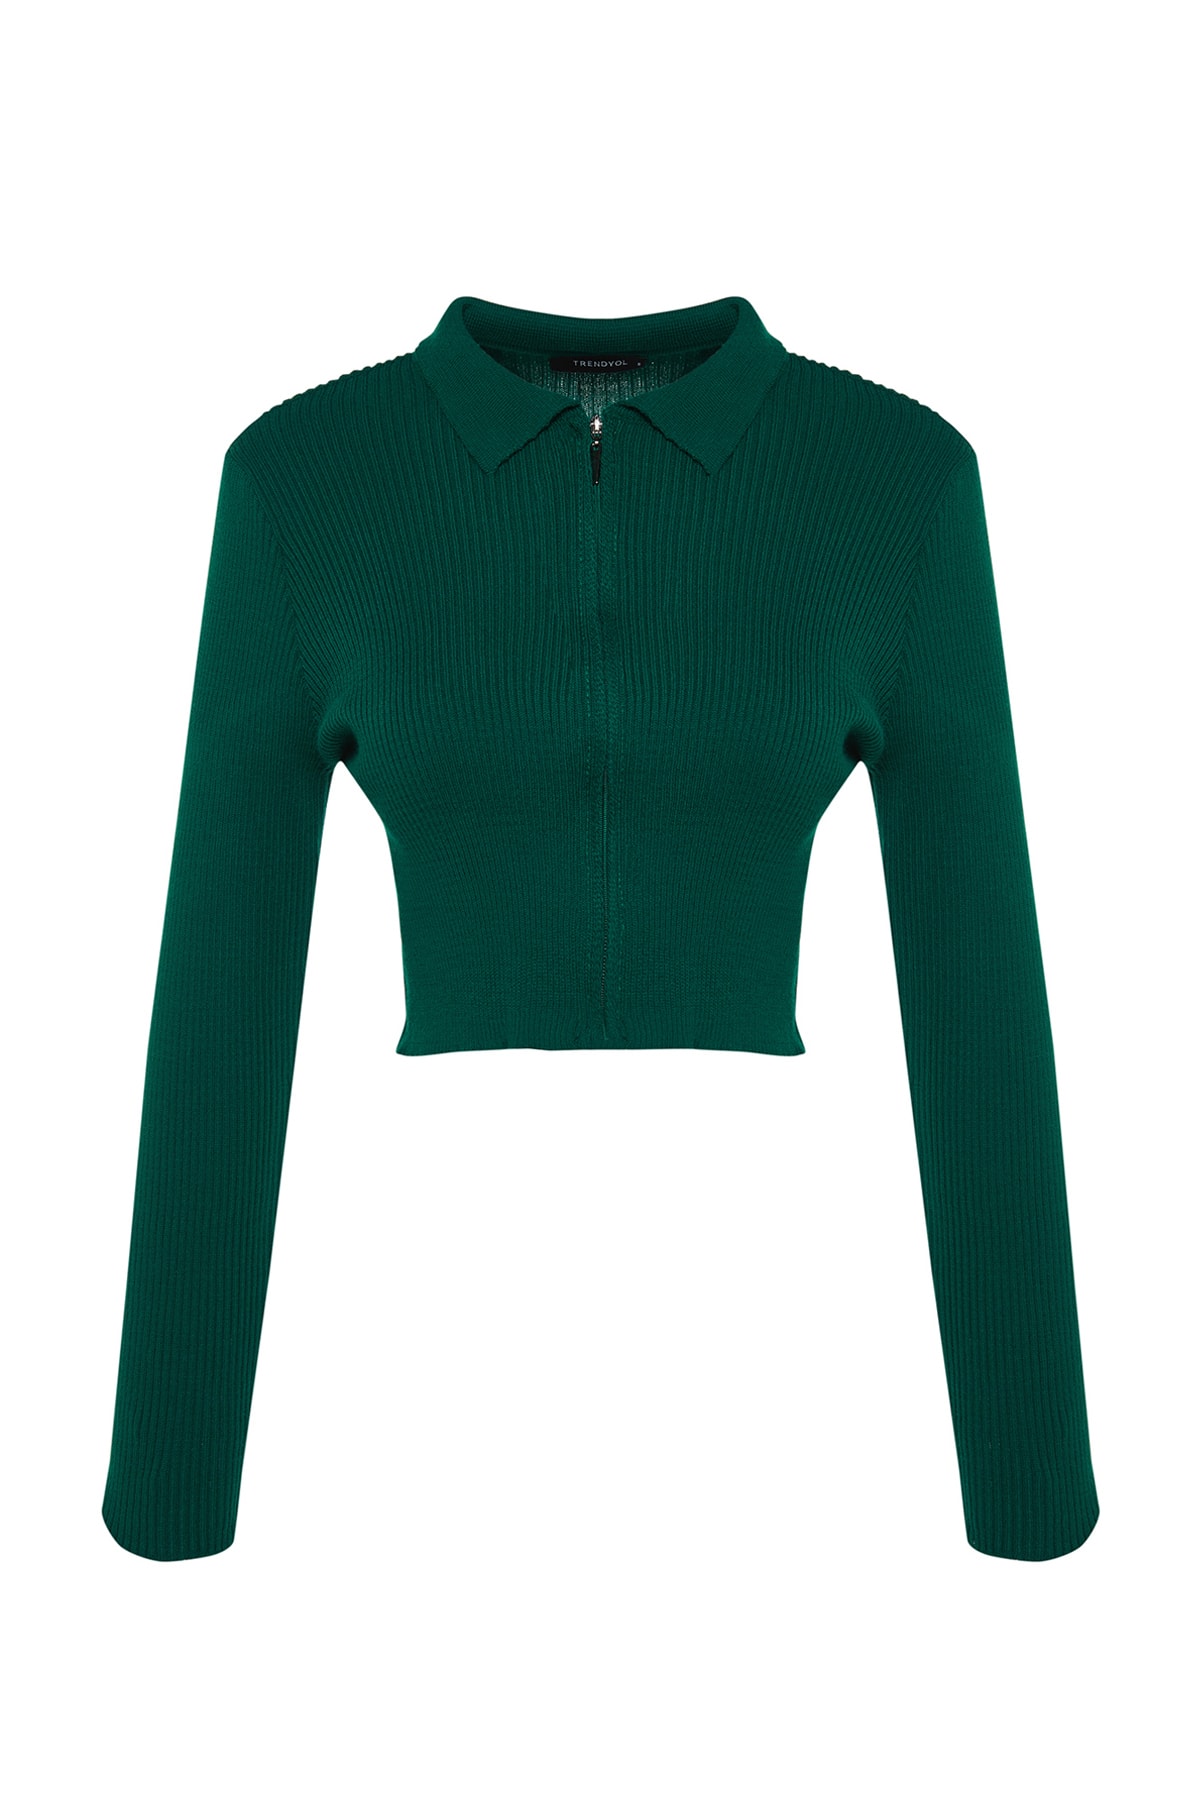 Trendyol Emerald Green Crop Zipper Knitwear Cardigan